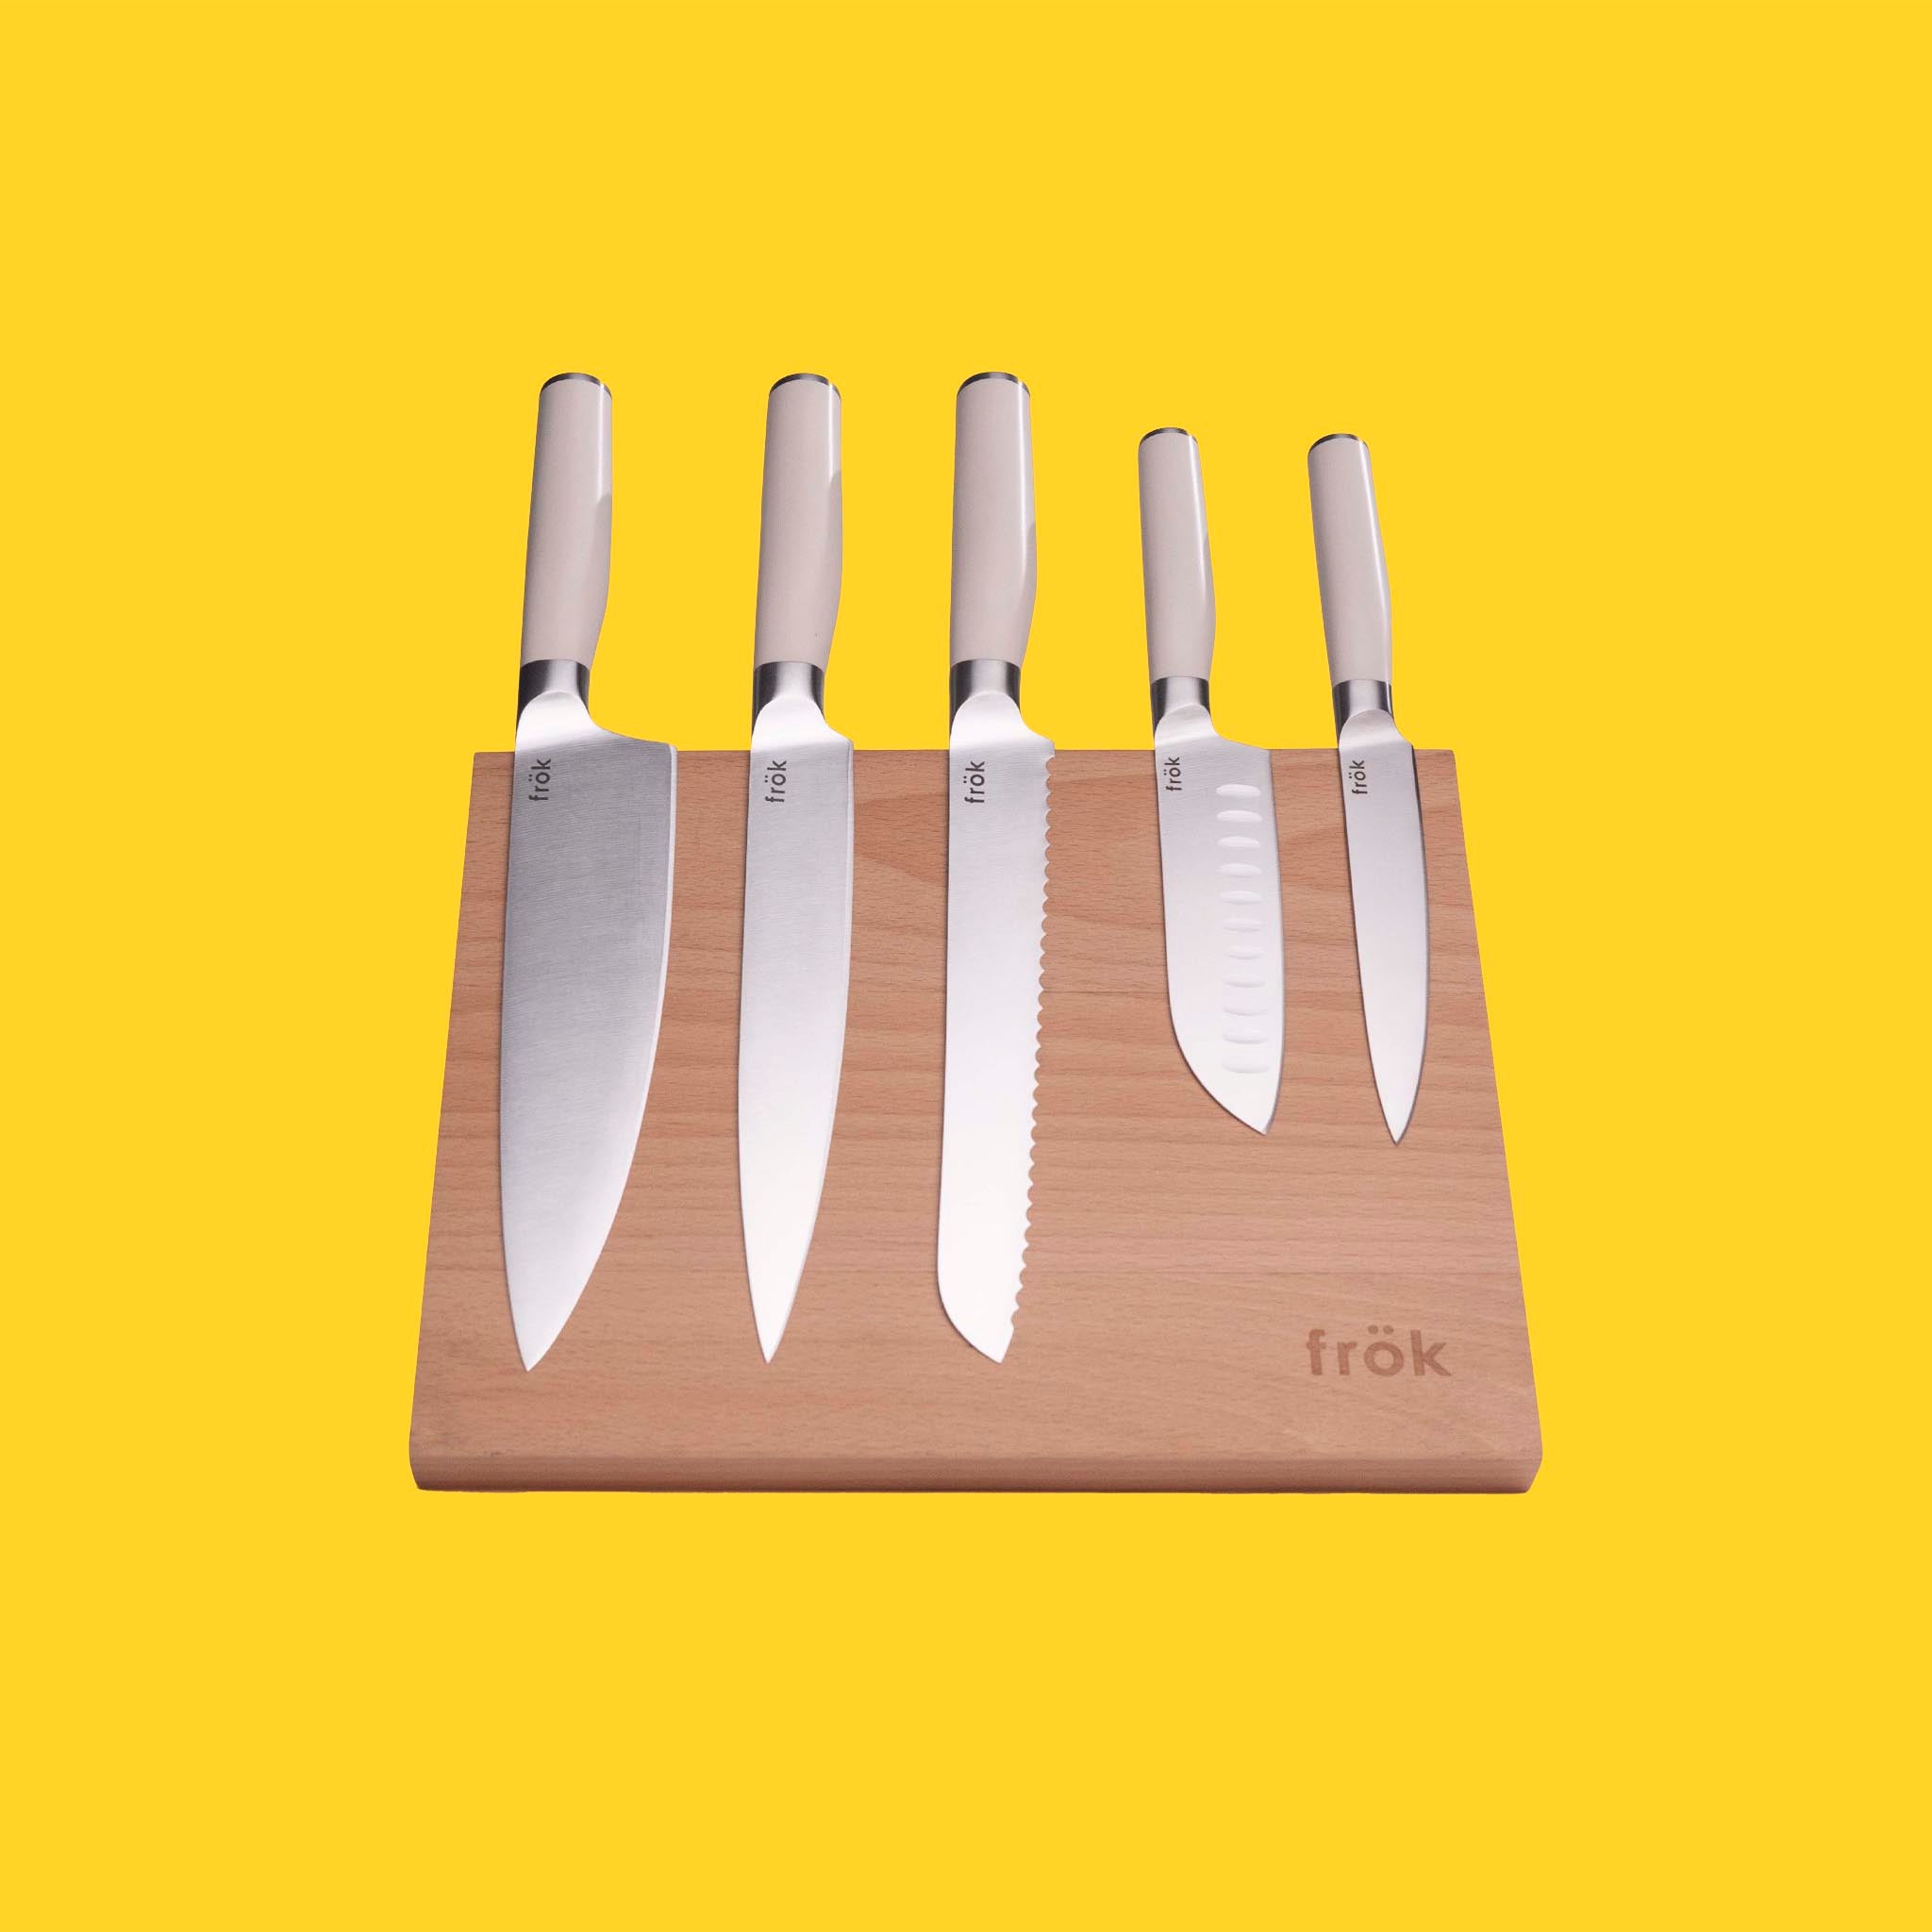  Knife Set, 6 Piece Kitchen Knives Set with Block